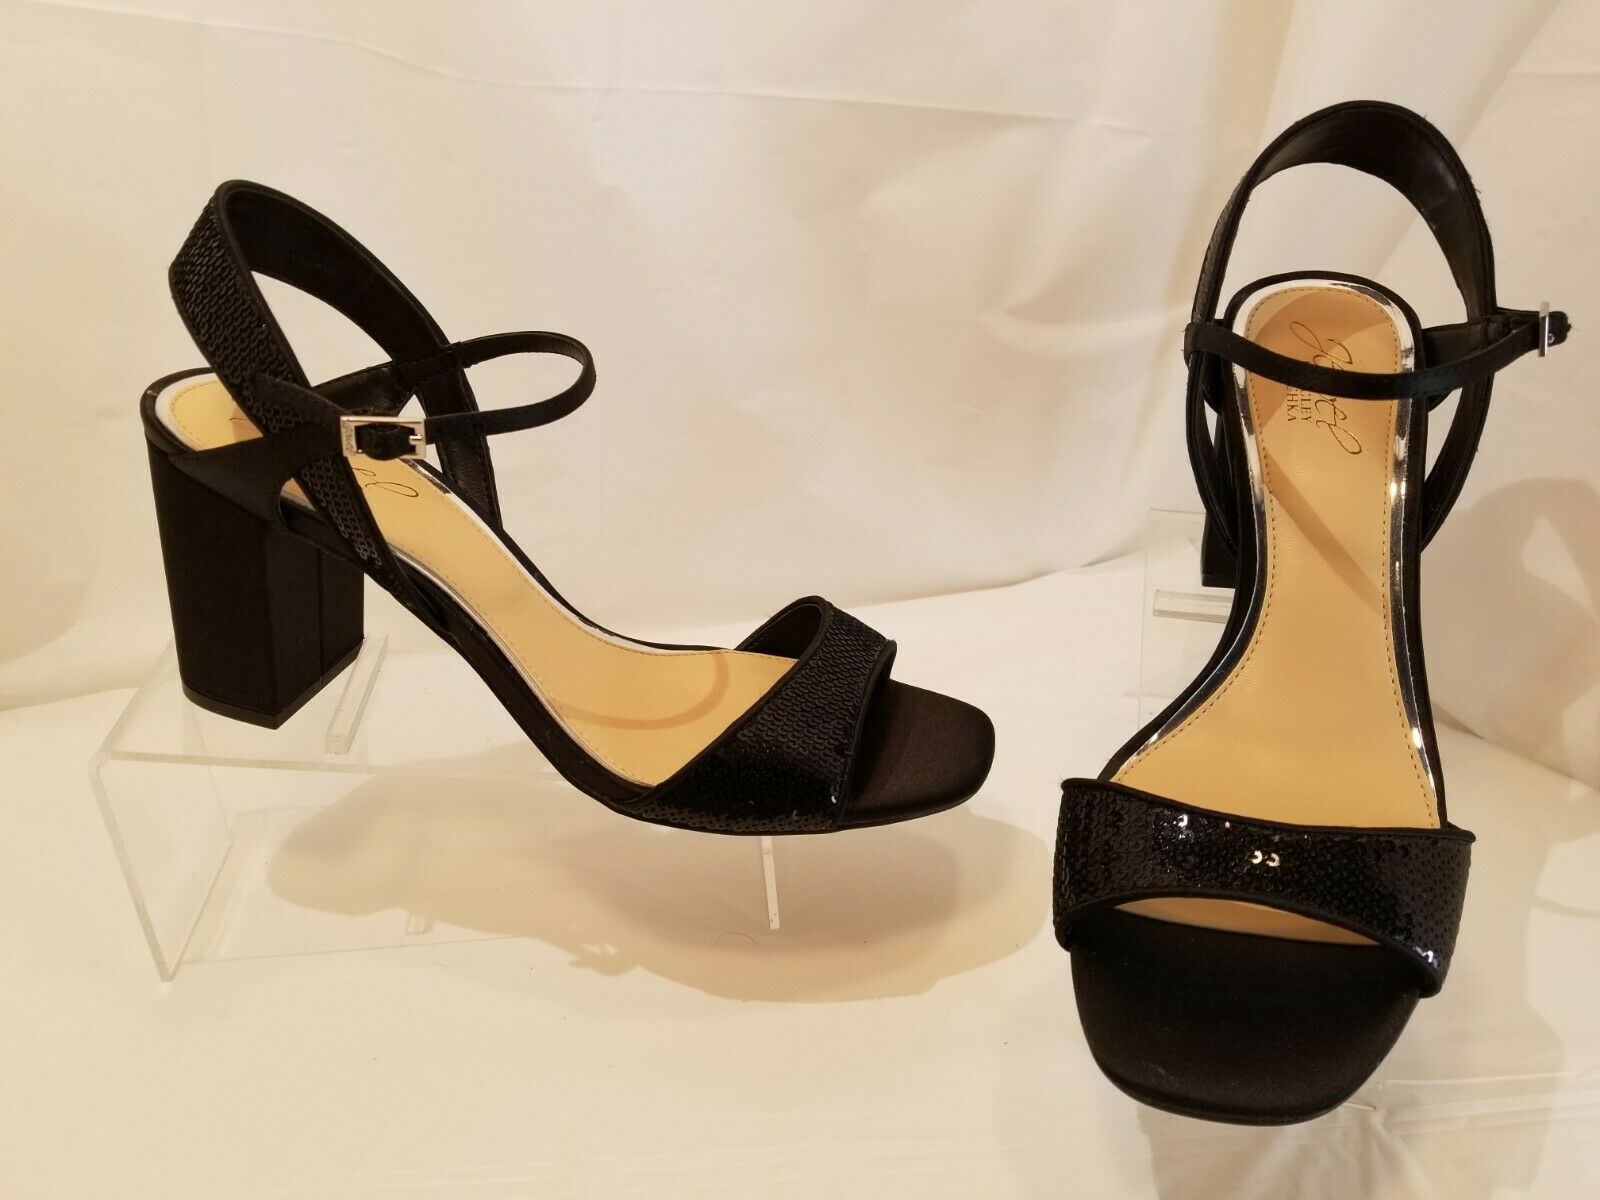 Badgley Mischka Jewel Women's Black Sequined Open Toe Dress Shoes Sandals 8.5 M